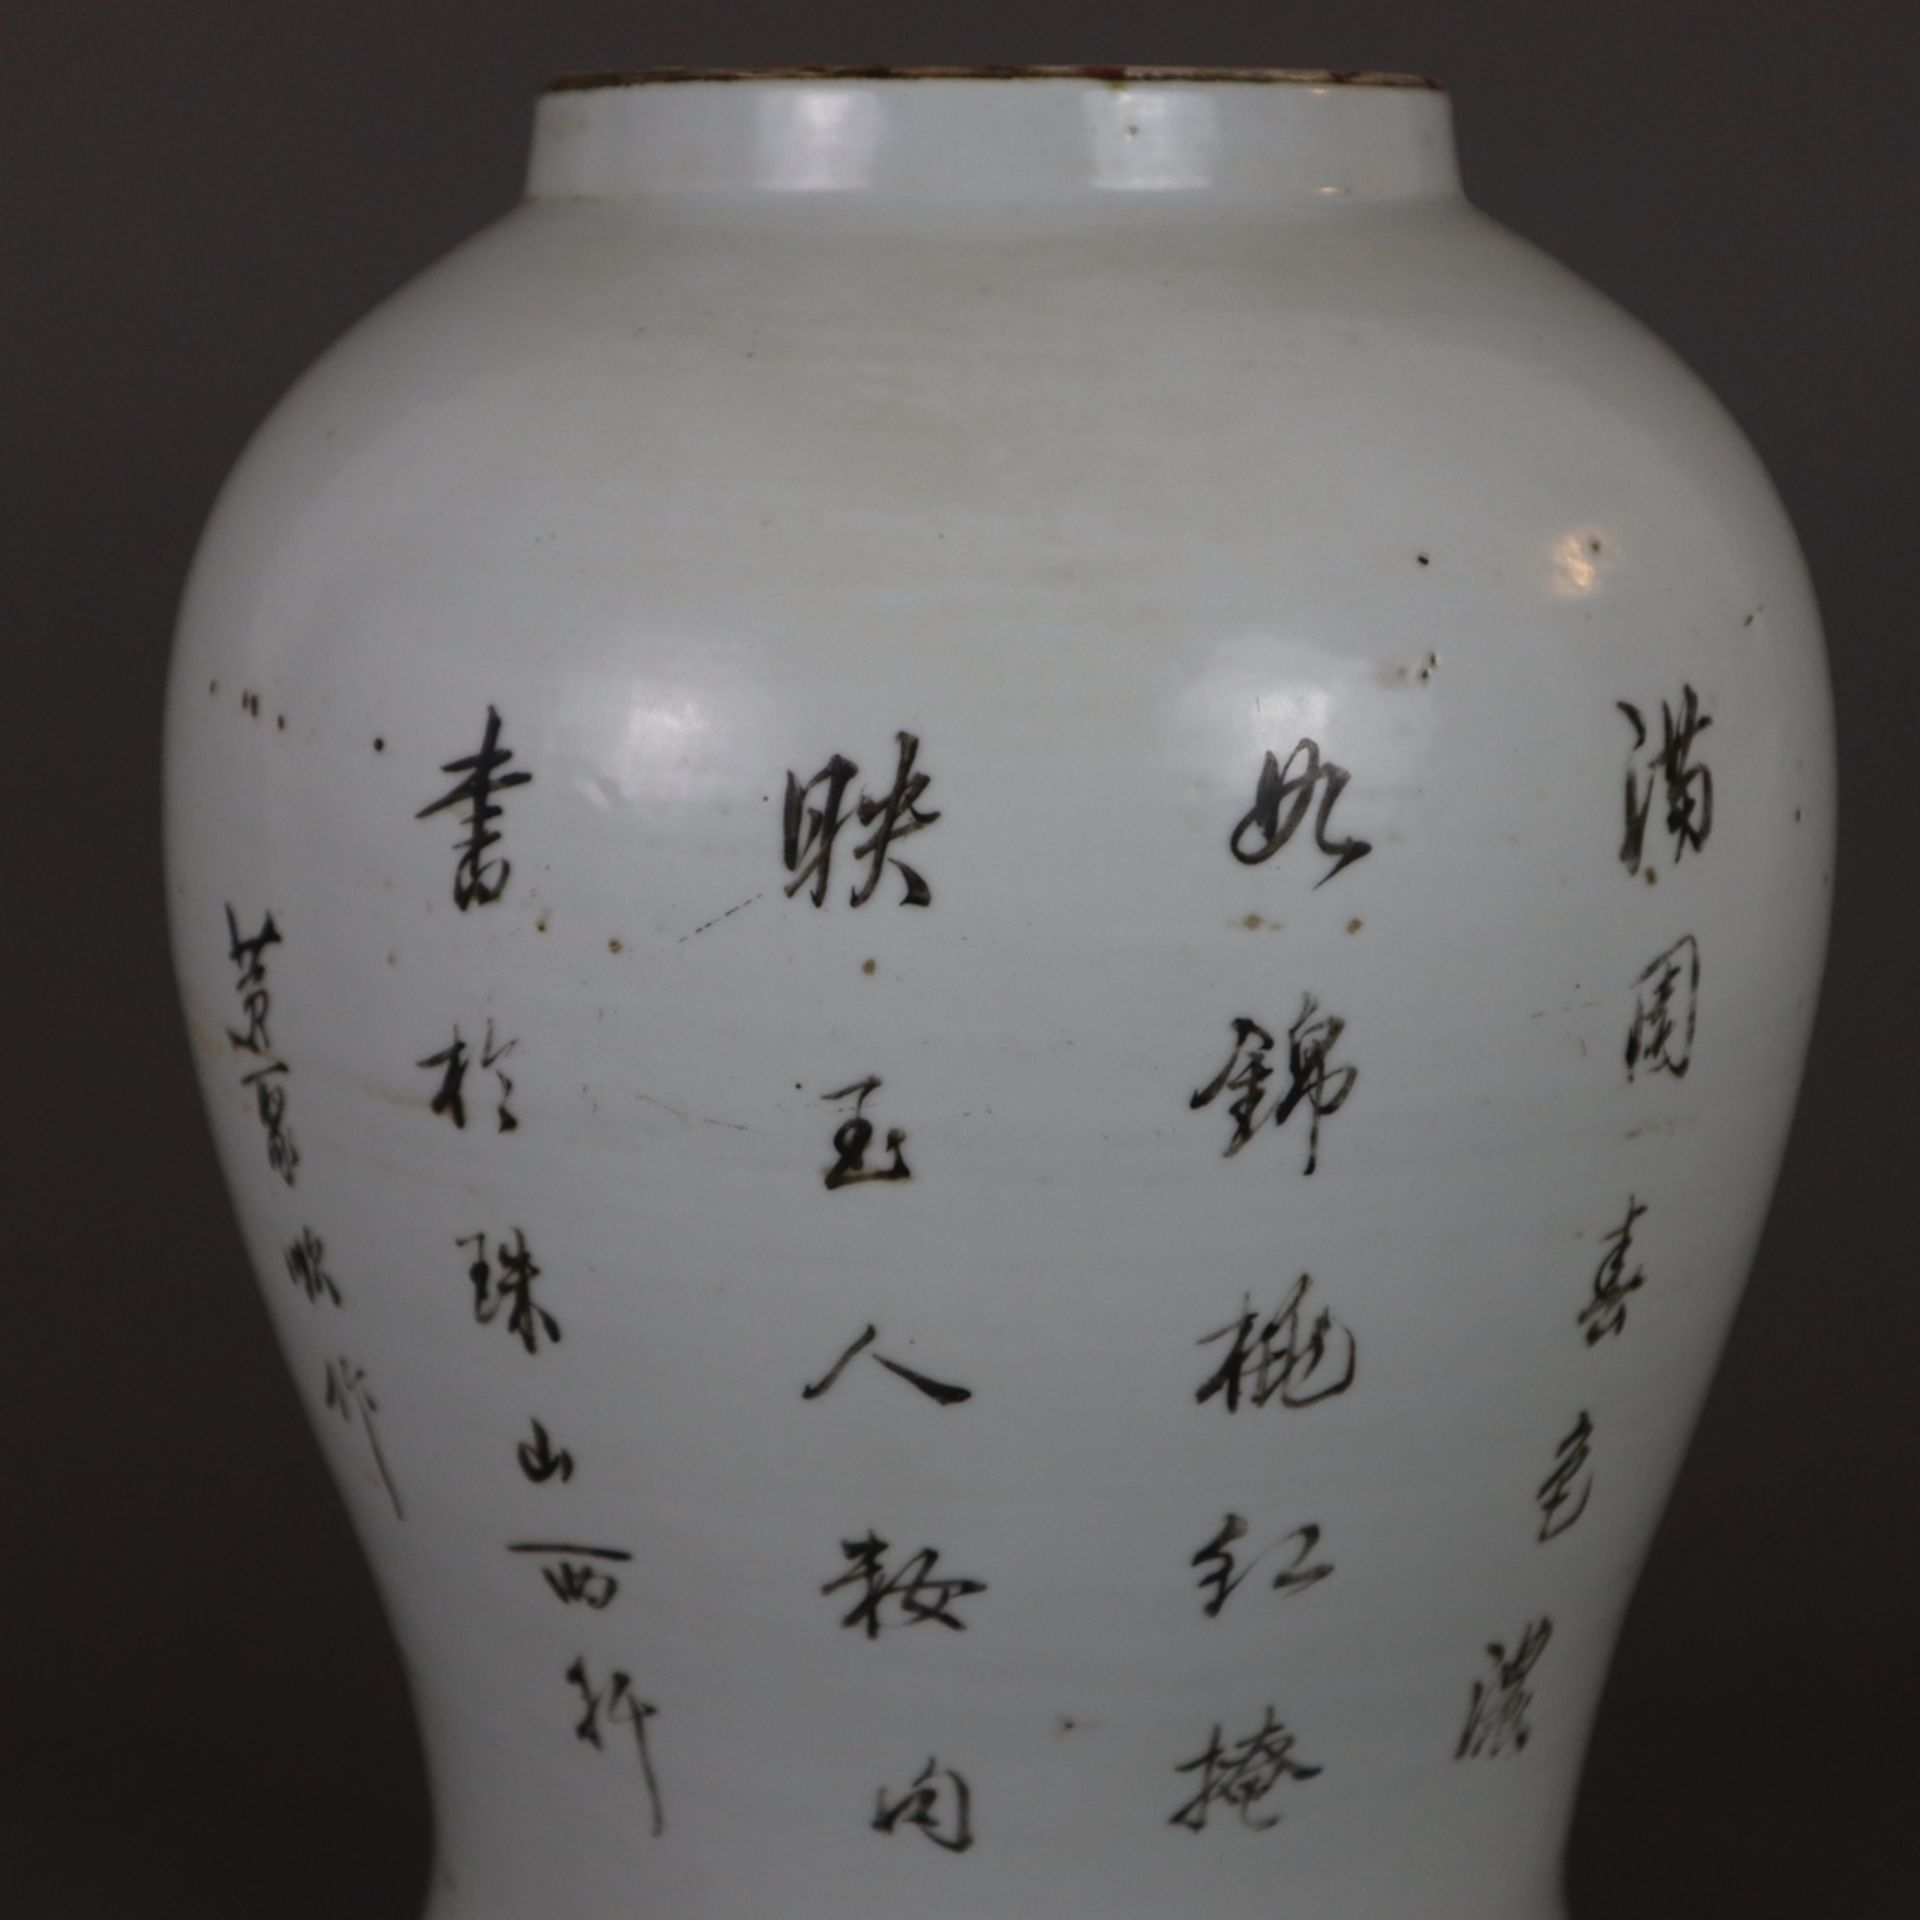 Ein Paar Famille rose-Vasen - China, späte Qing-Dynastie, Porzellan, polychrome Bemalung in der Far - Bild 11 aus 13